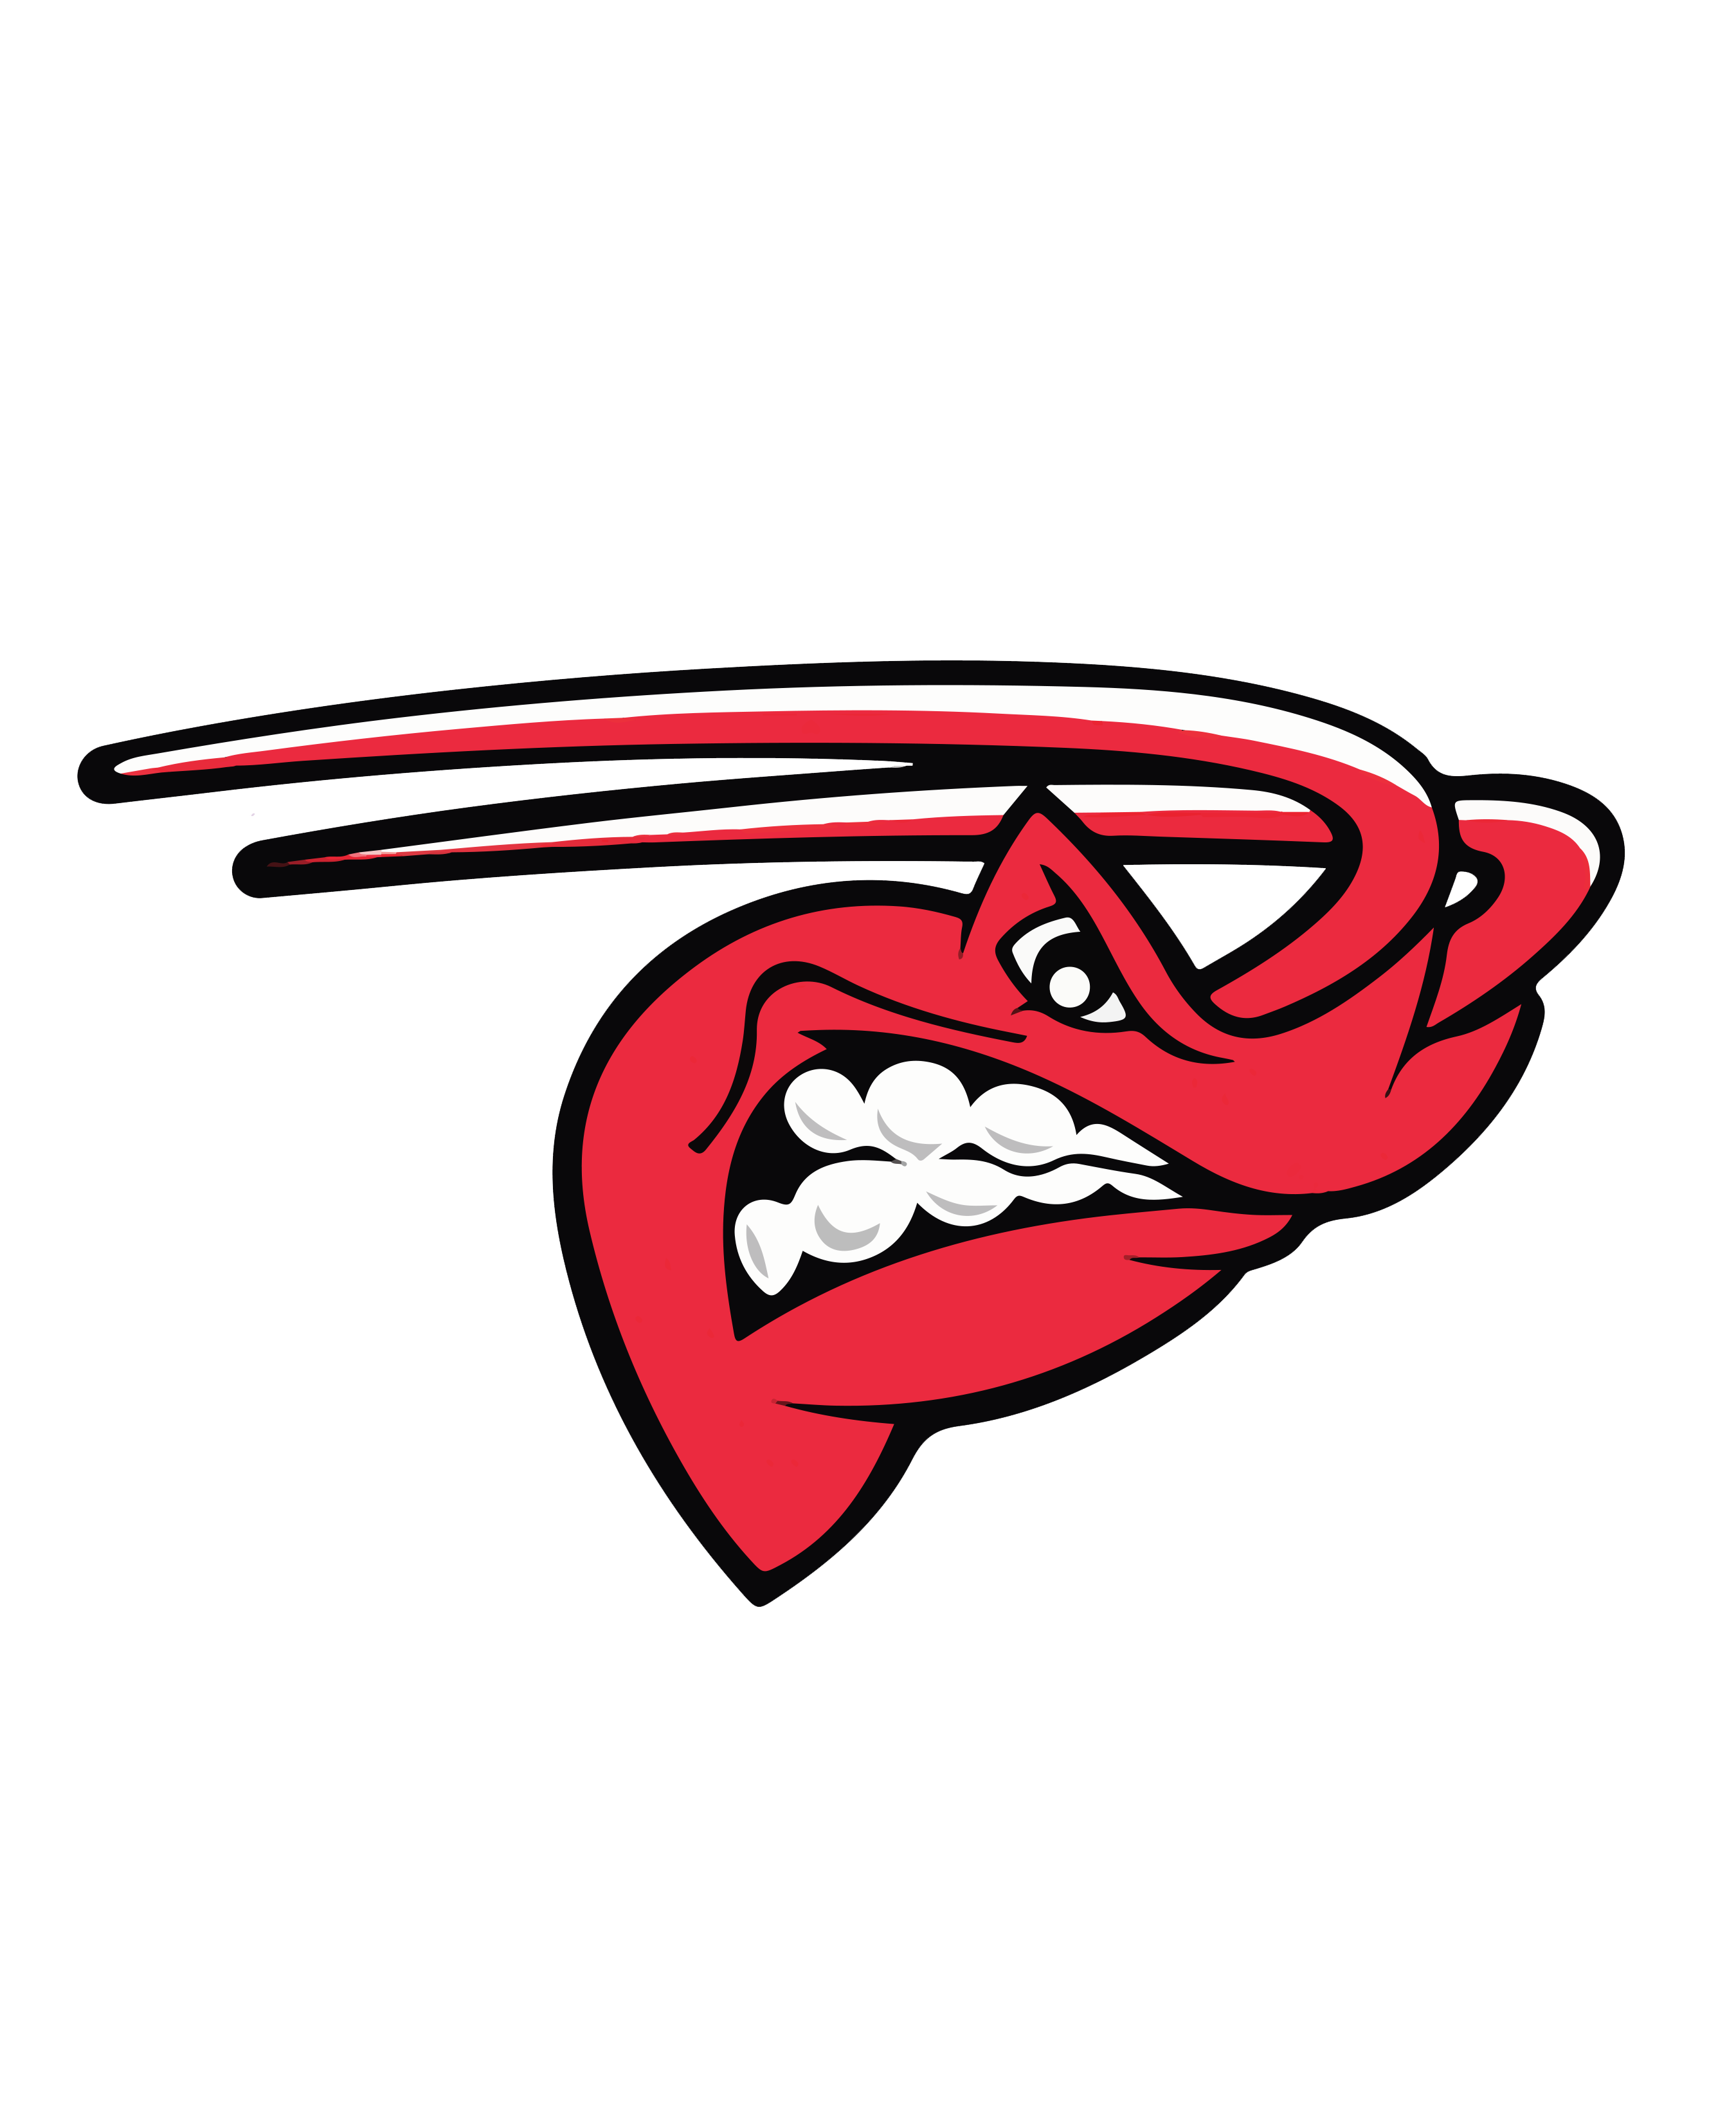 minor league hockey logos mudbugs